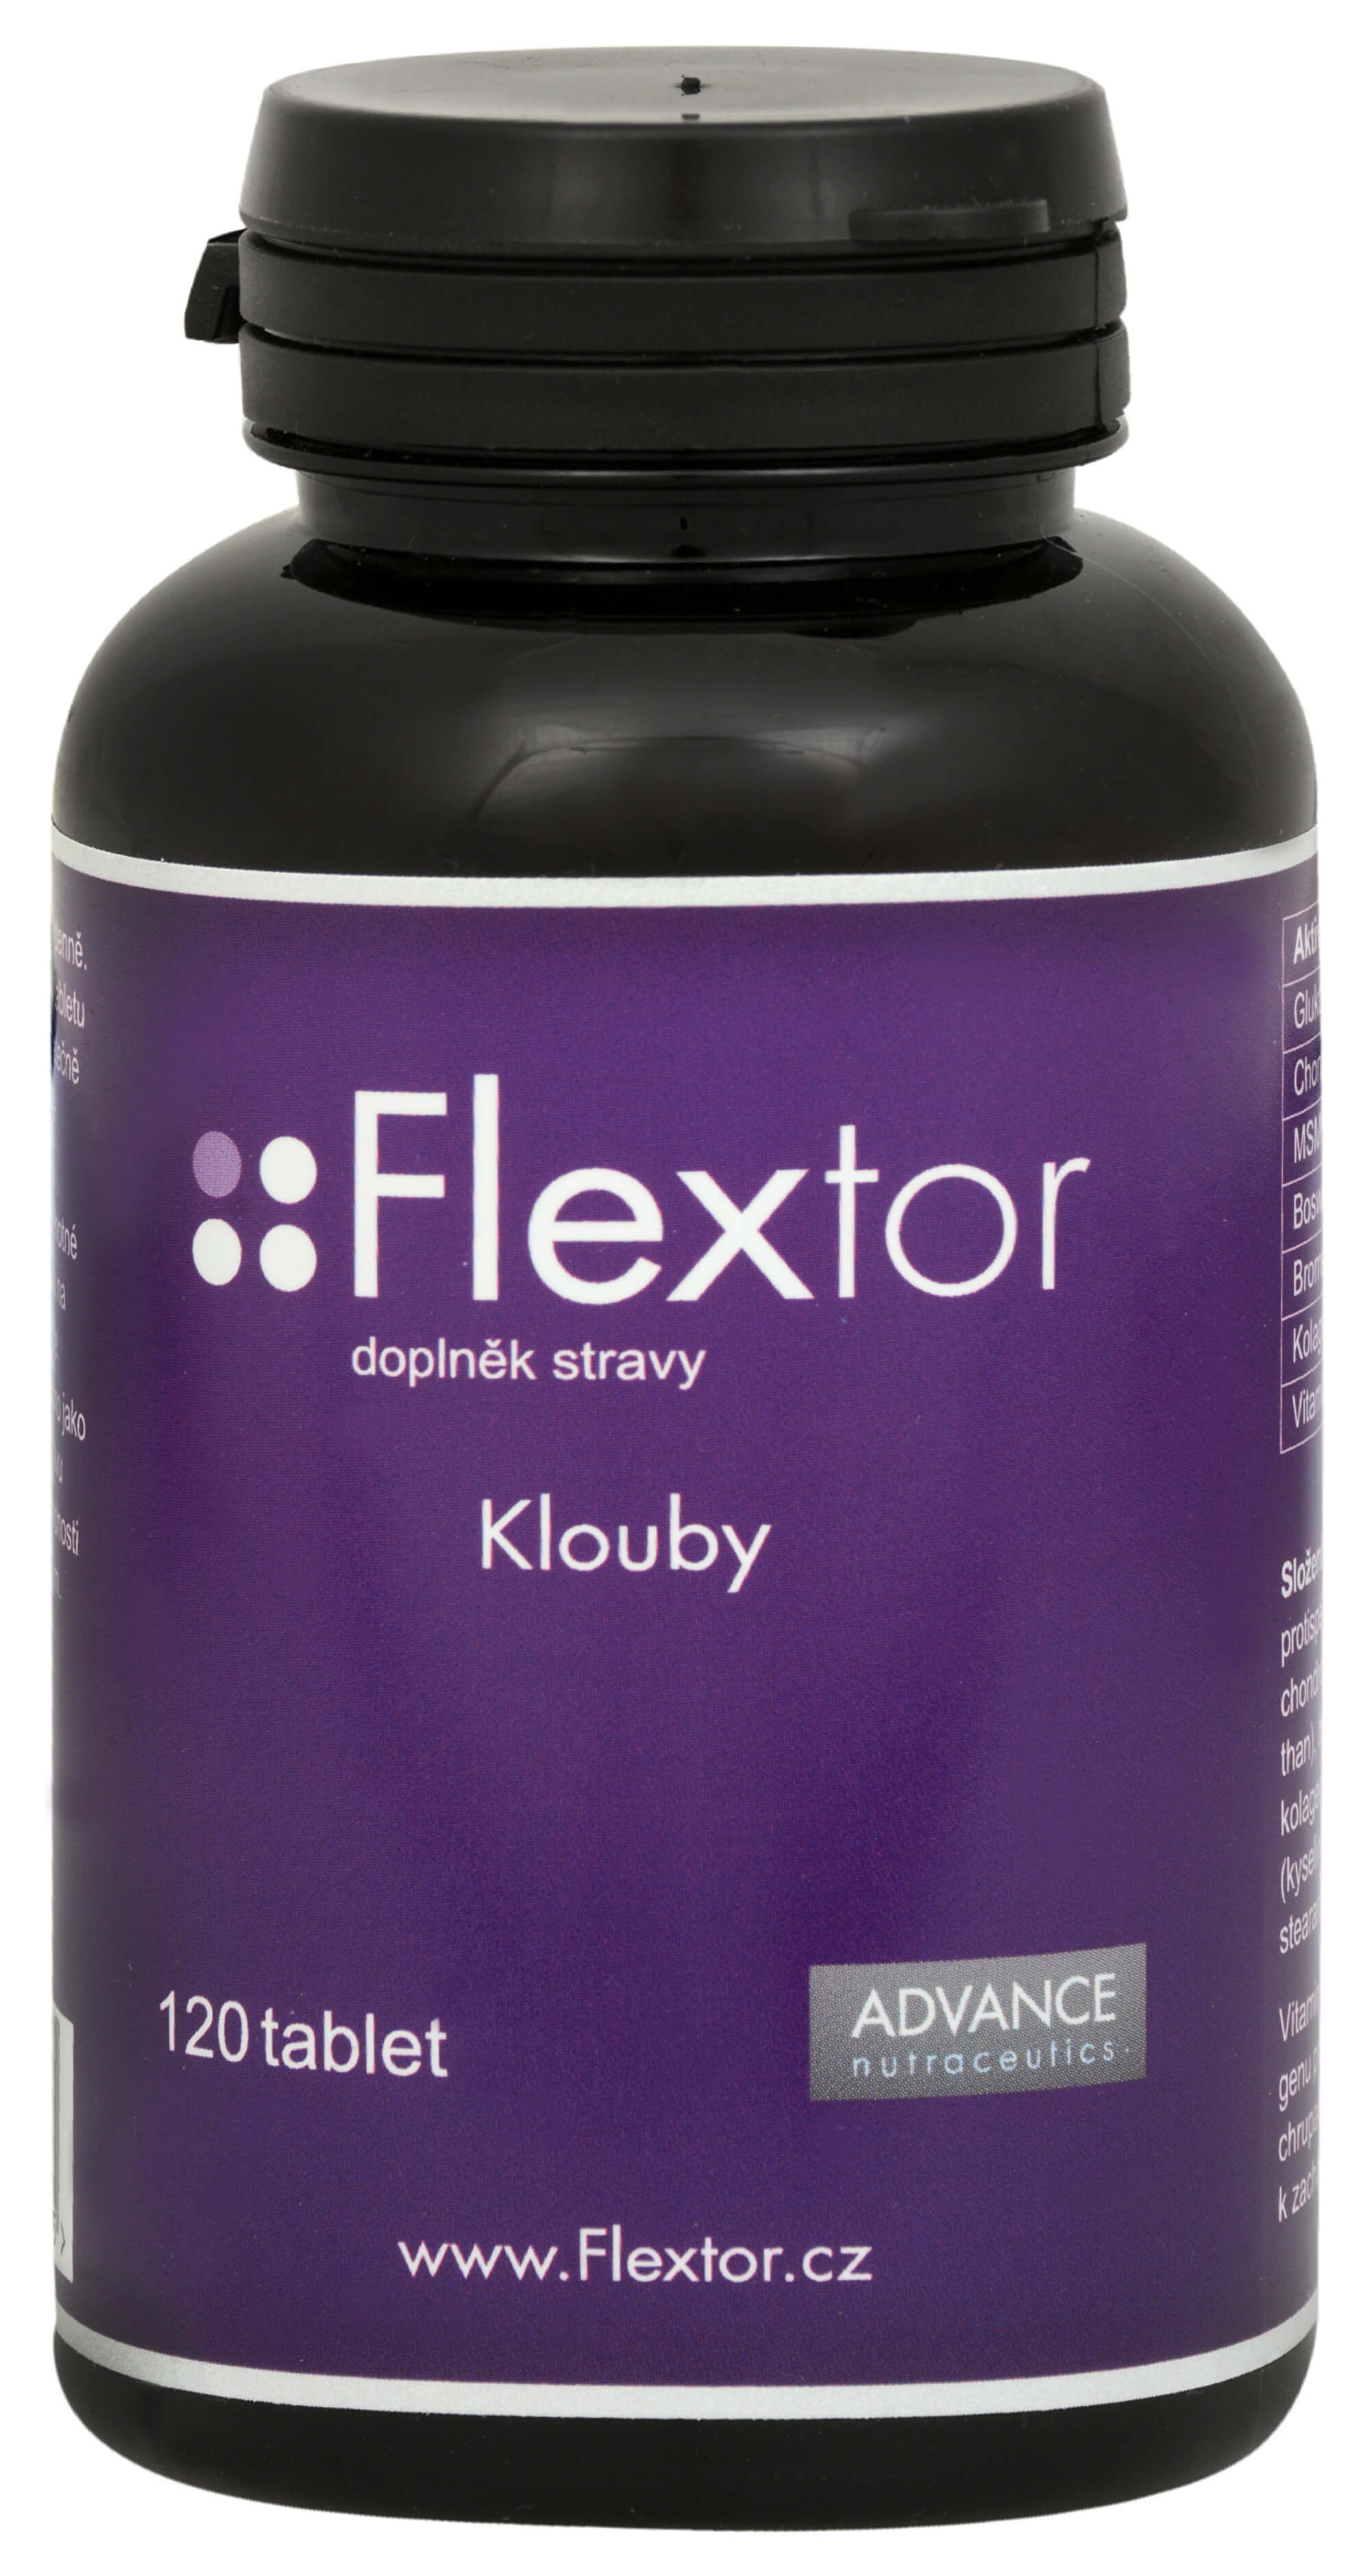 Zobrazit detail výrobku Advance nutraceutics Flextor 120 tbl. + 2 měsíce na vrácení zboží